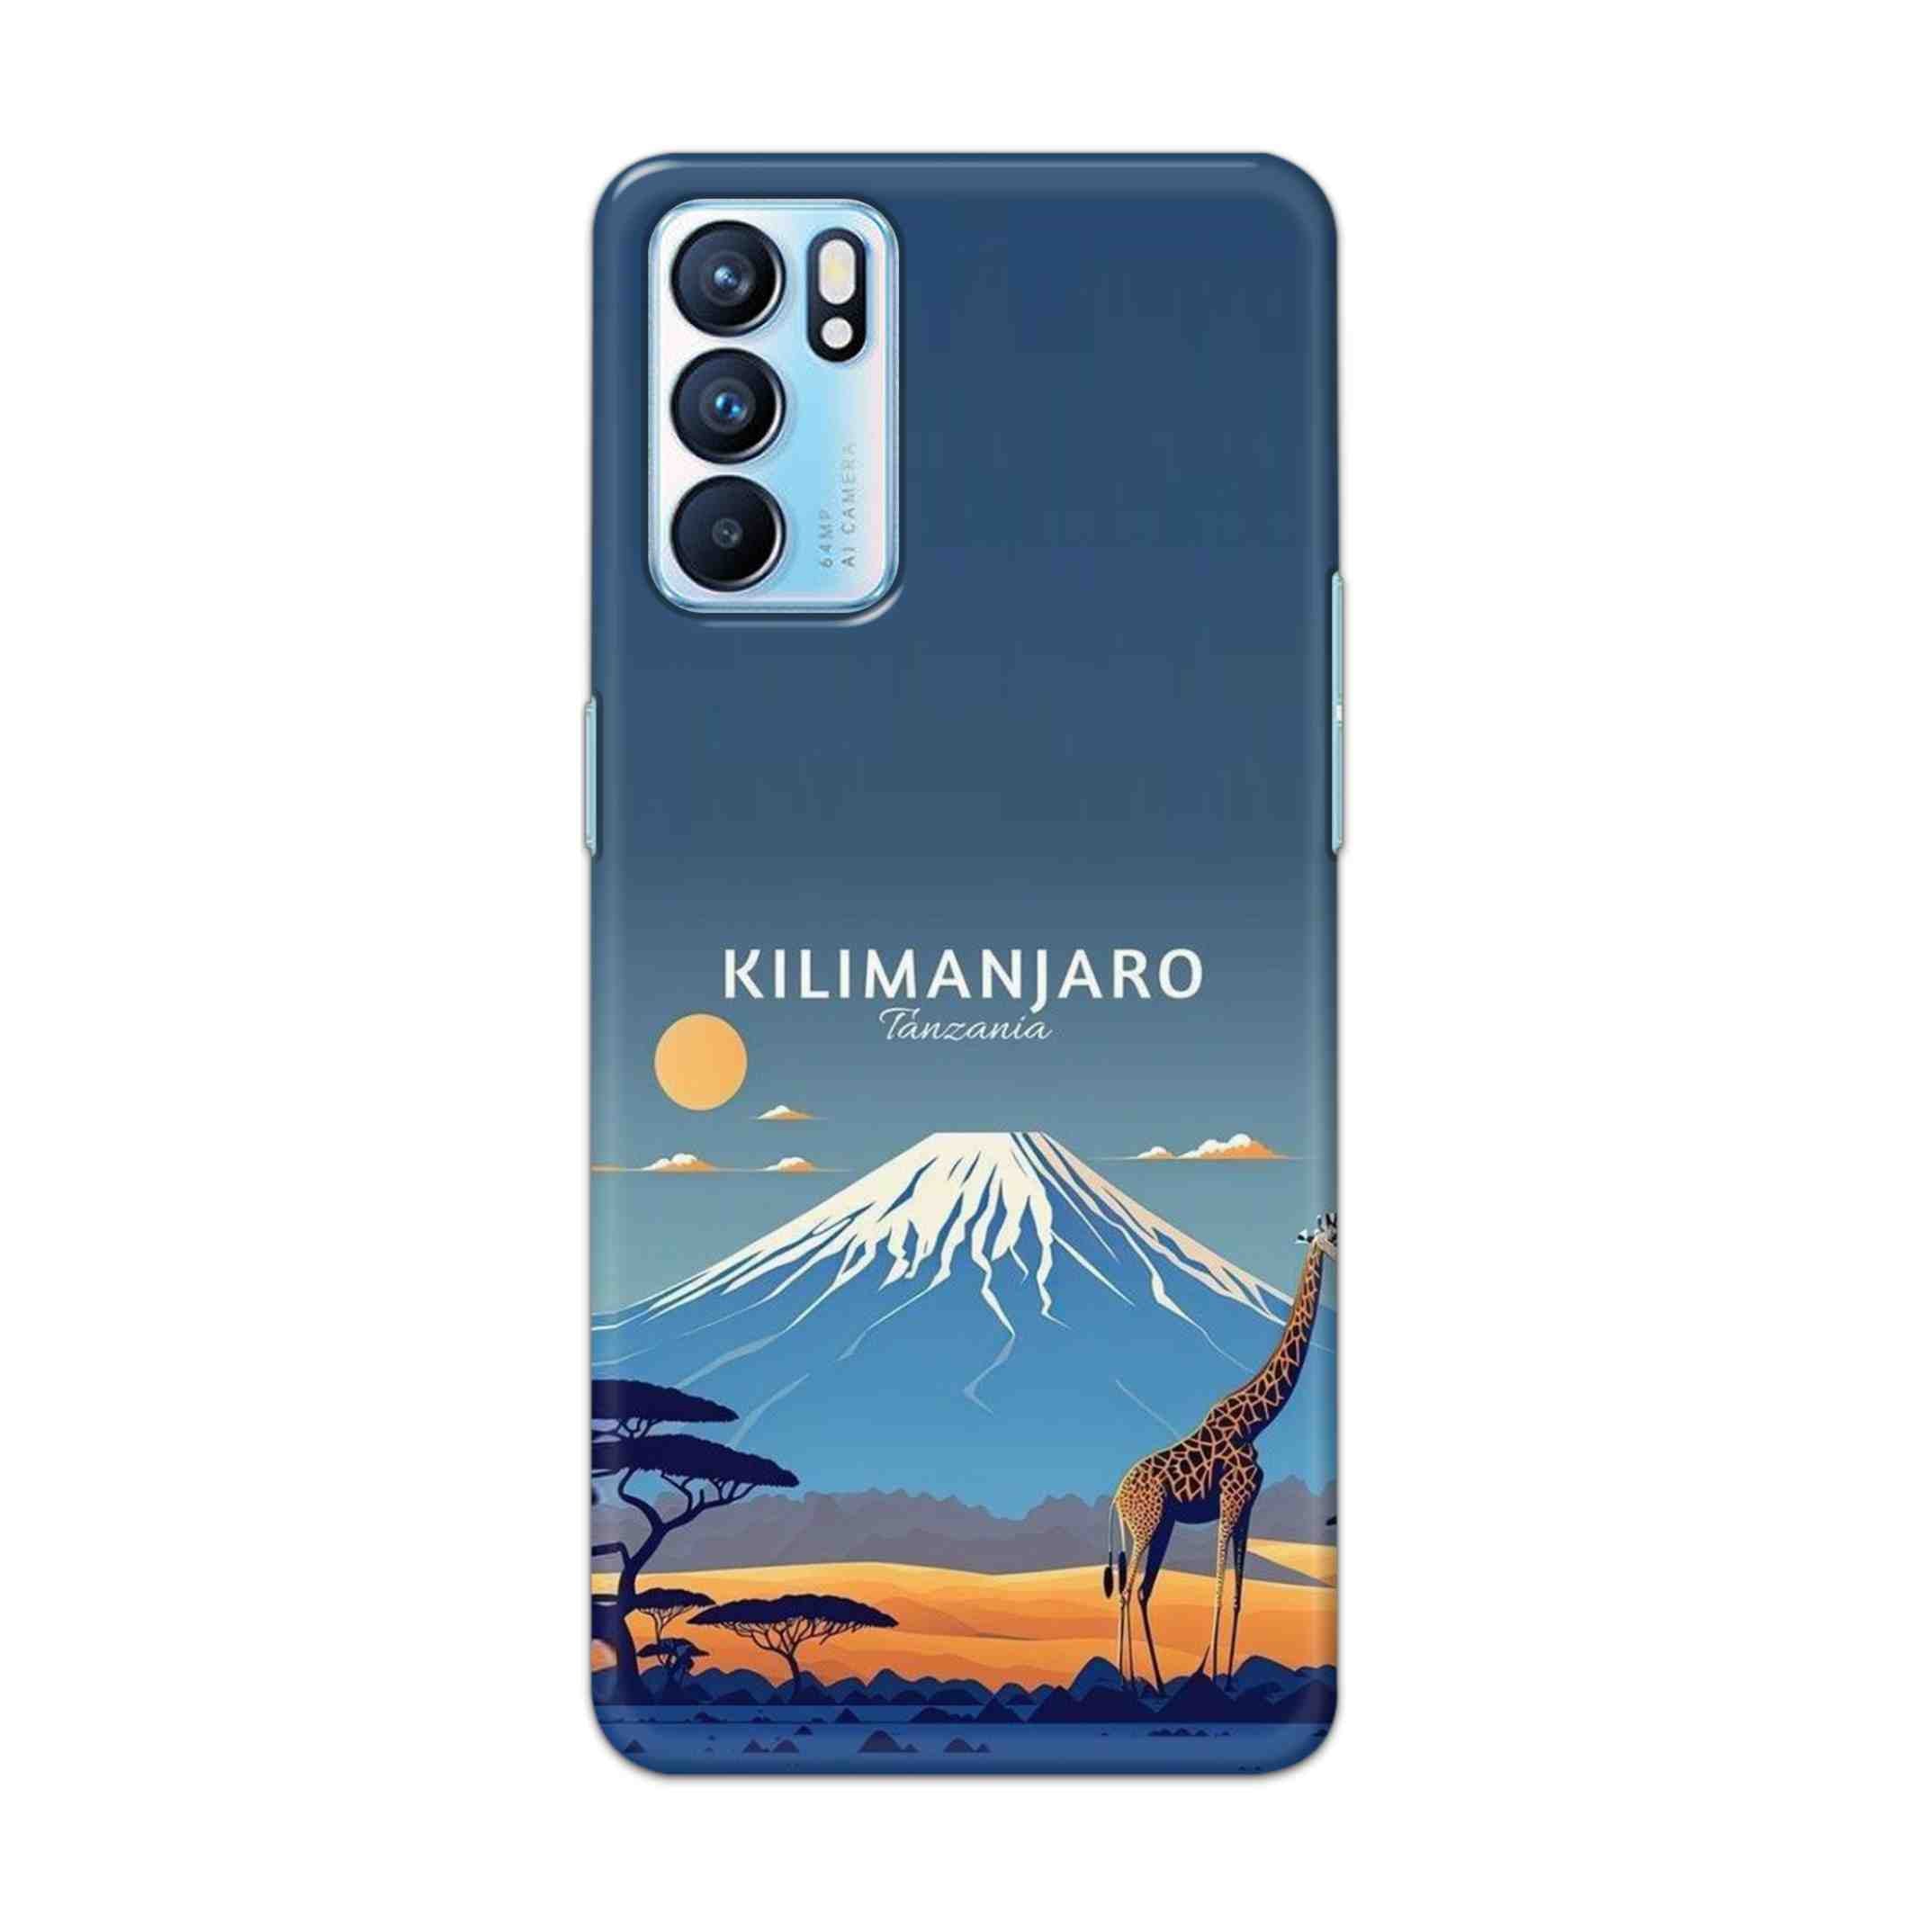 Buy Kilimanjaro Hard Back Mobile Phone Case Cover For OPPO RENO 6 Online